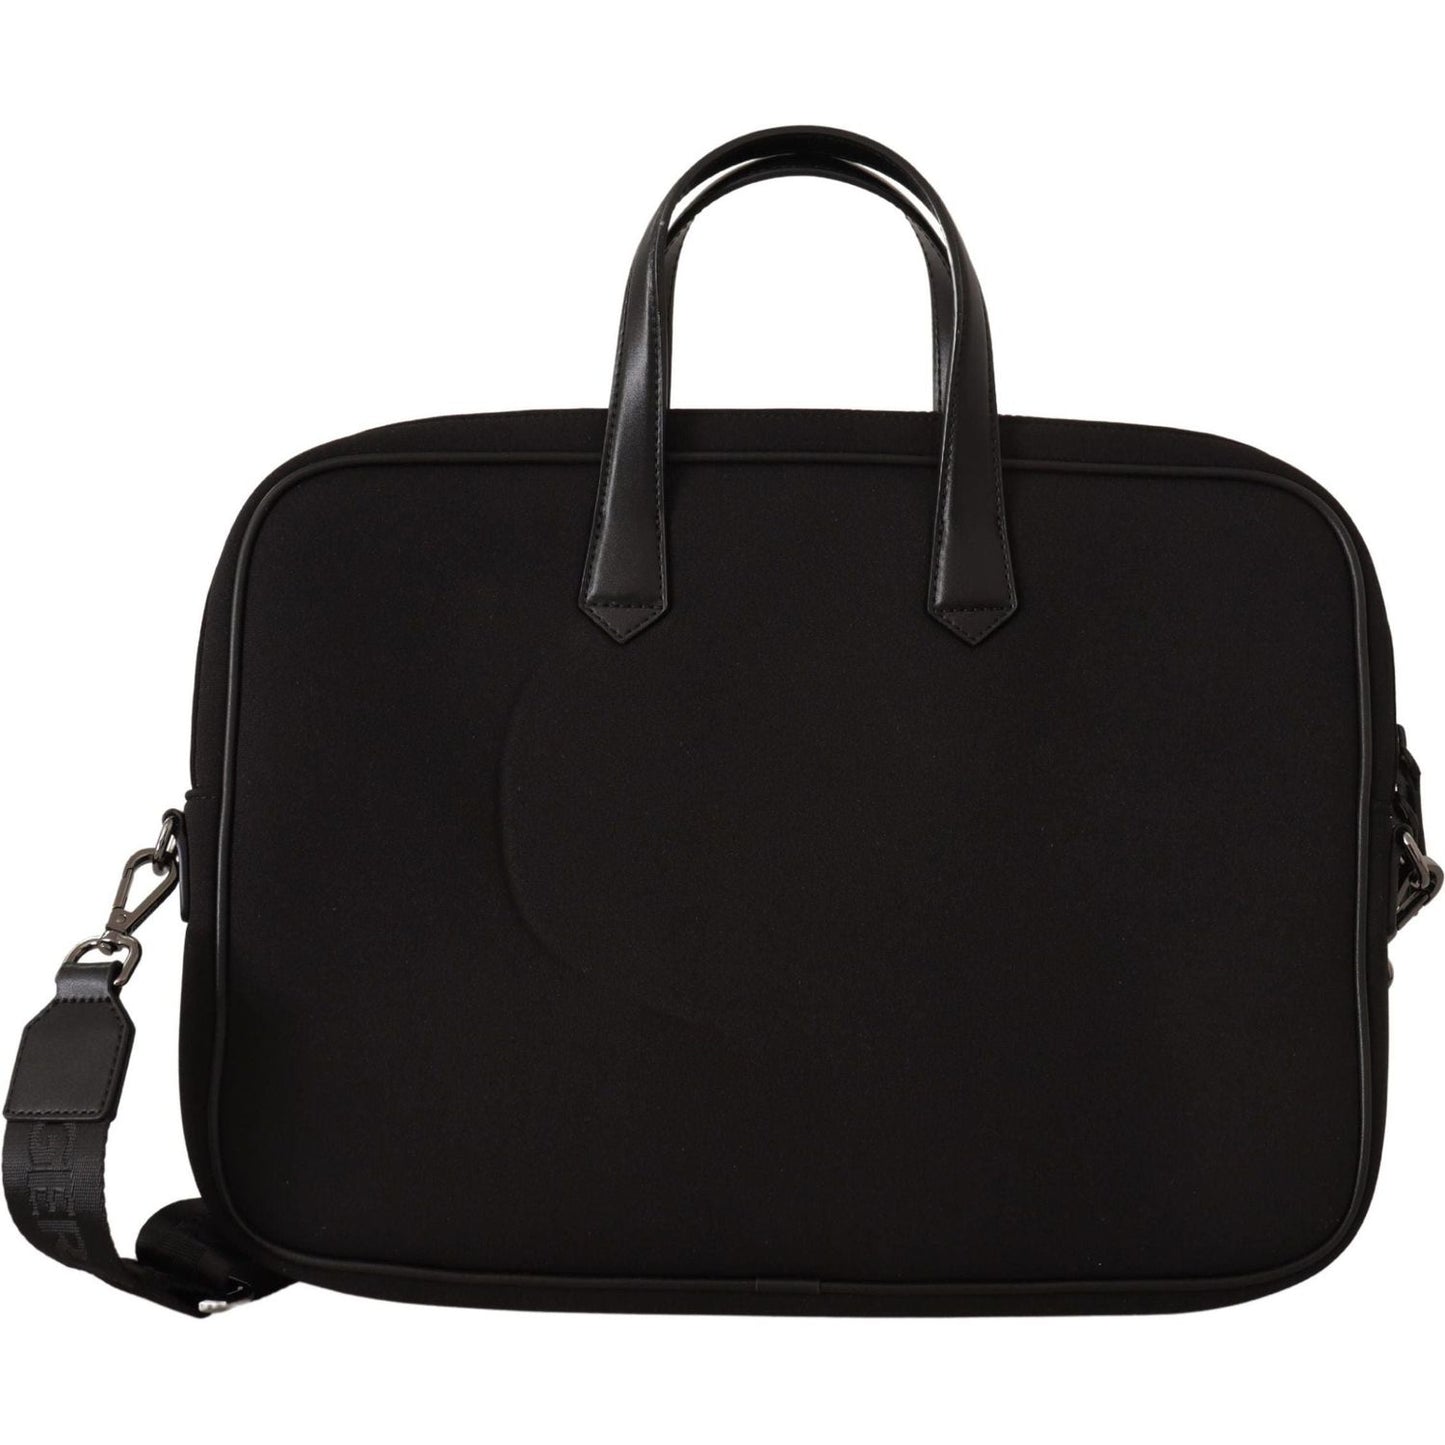 Karl Lagerfeld Sleek Nylon Laptop Crossbody Bag For Sophisticated Style black-nylon-laptop-crossbody-bag